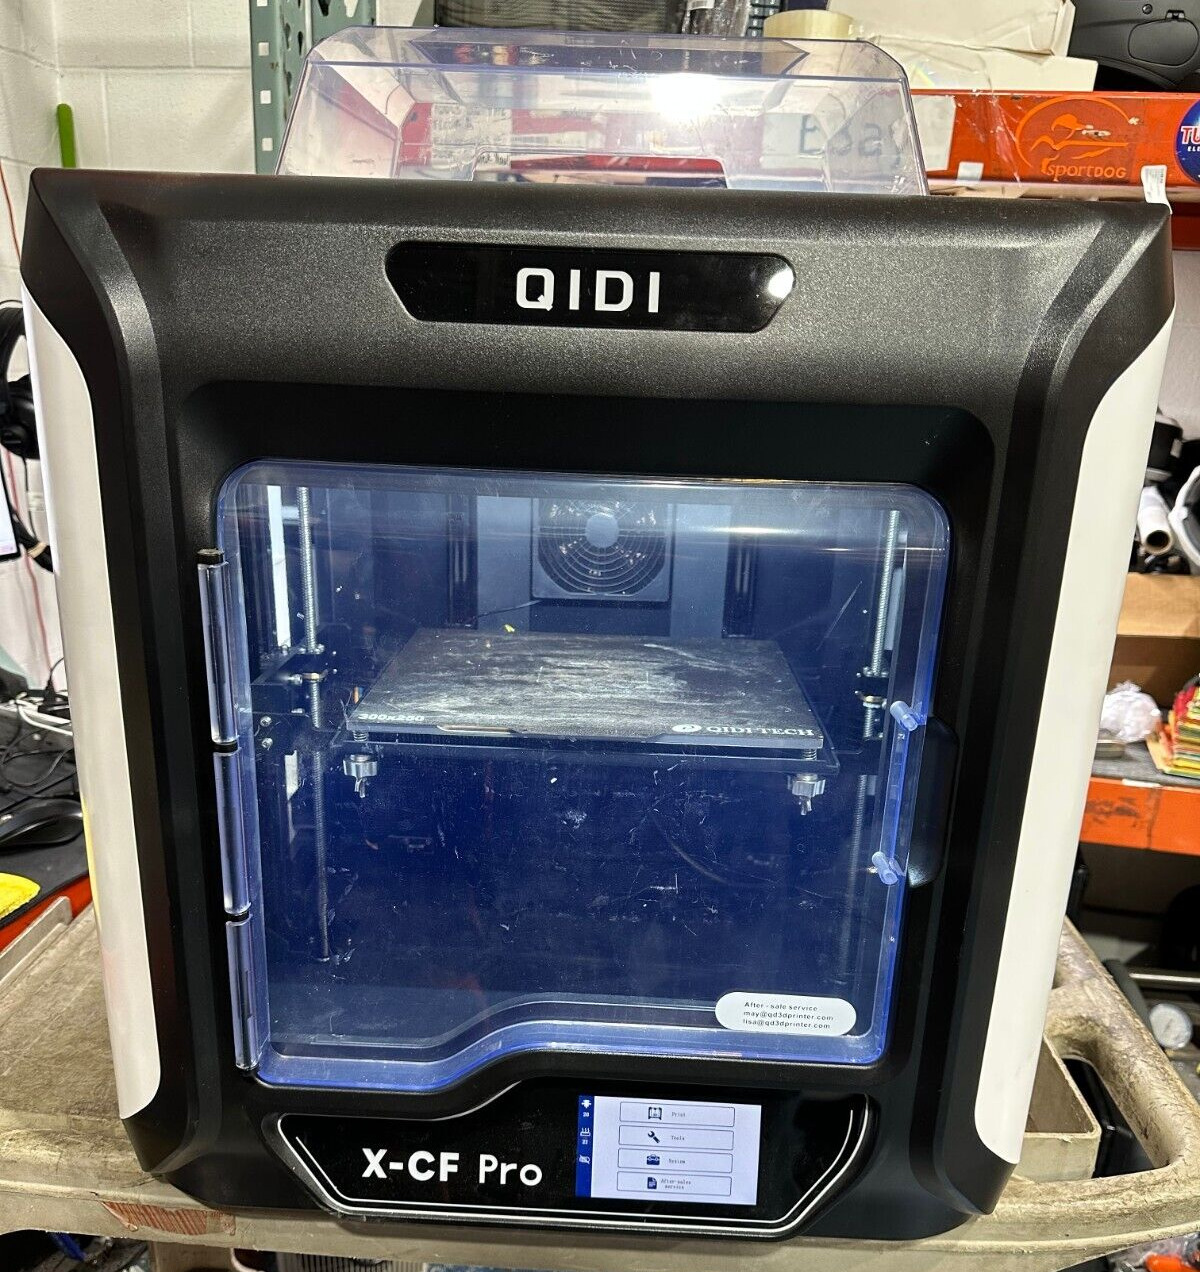 QIDI TECH X-CF-Pro Industrial Grade 3D Printer for Carbon Fiber Nylon Print I2Q9